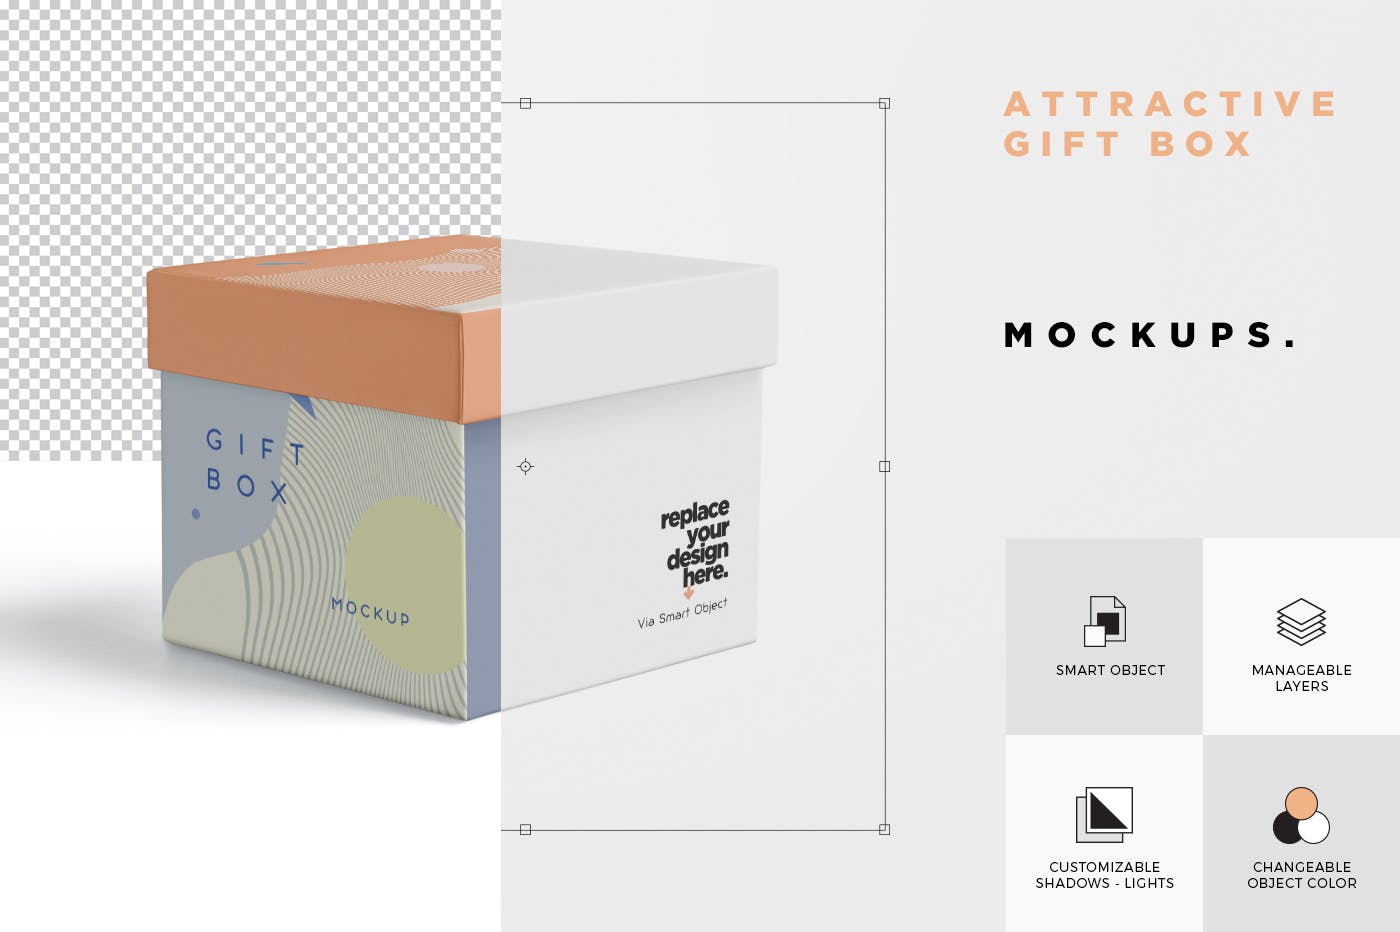 礼品定制包装盒外观设计效果图预览样机 5 Attractive Gift Box Mockups插图(6)